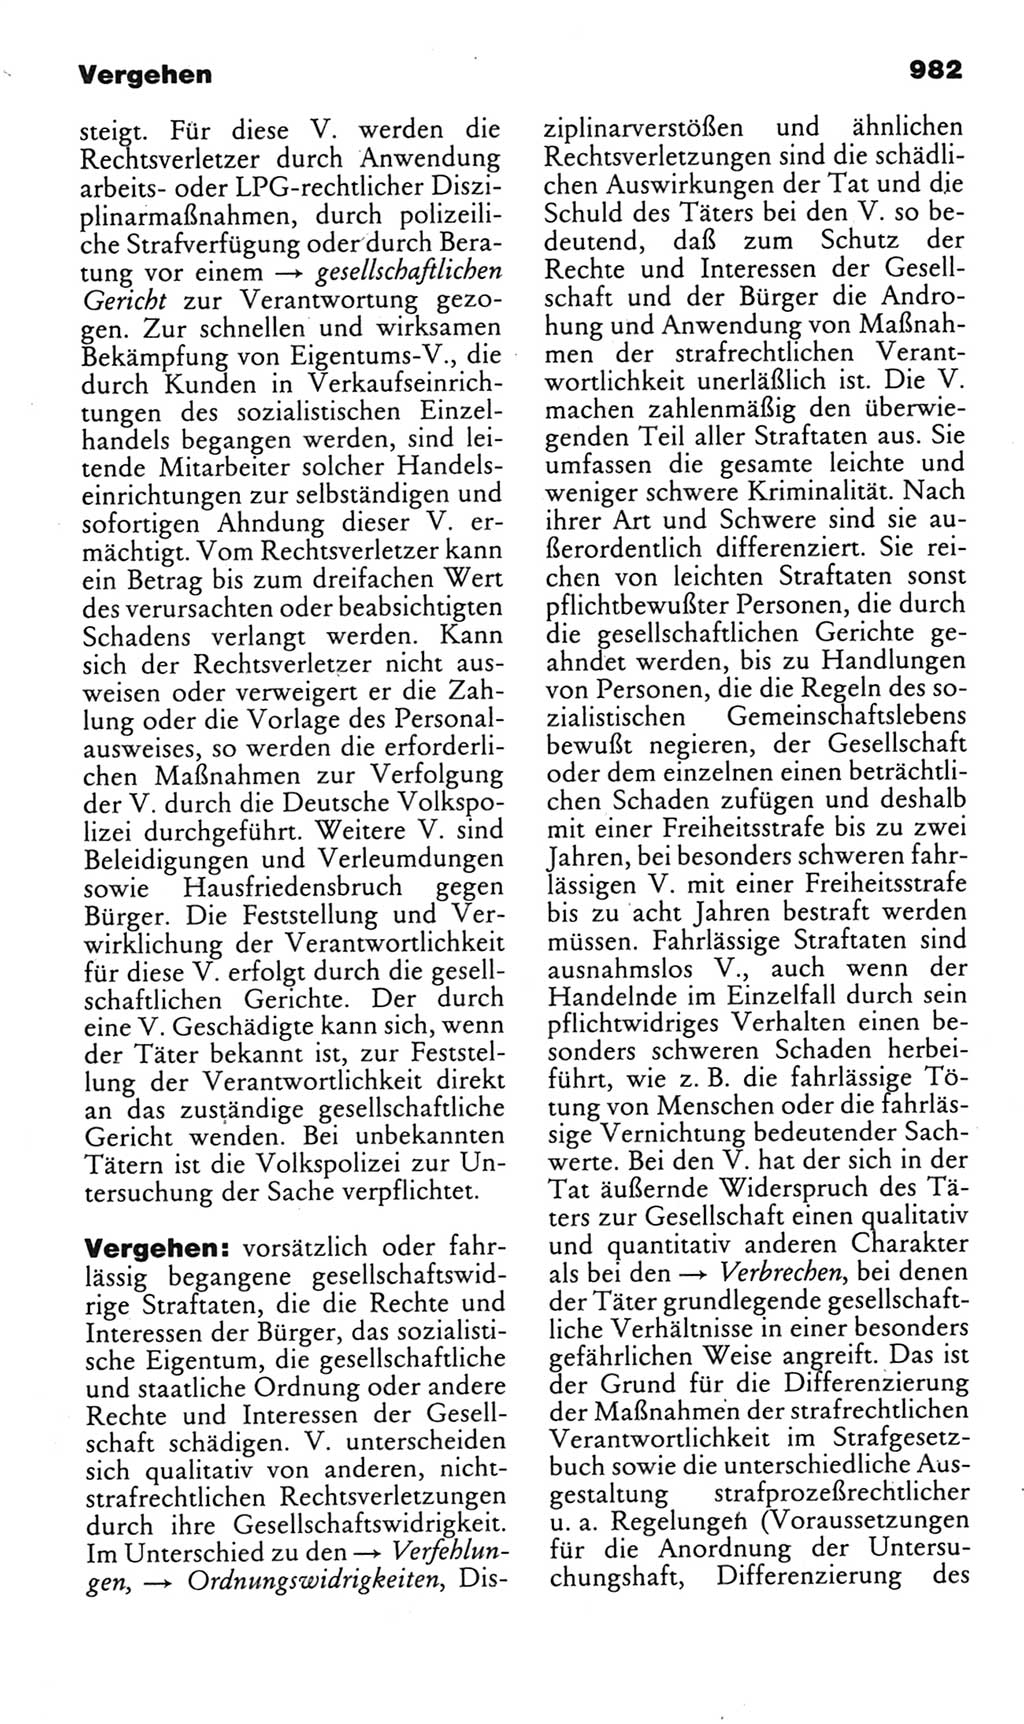 Kleines politisches Wörterbuch [Deutsche Demokratische Republik (DDR)] 1985, Seite 982 (Kl. pol. Wb. DDR 1985, S. 982)